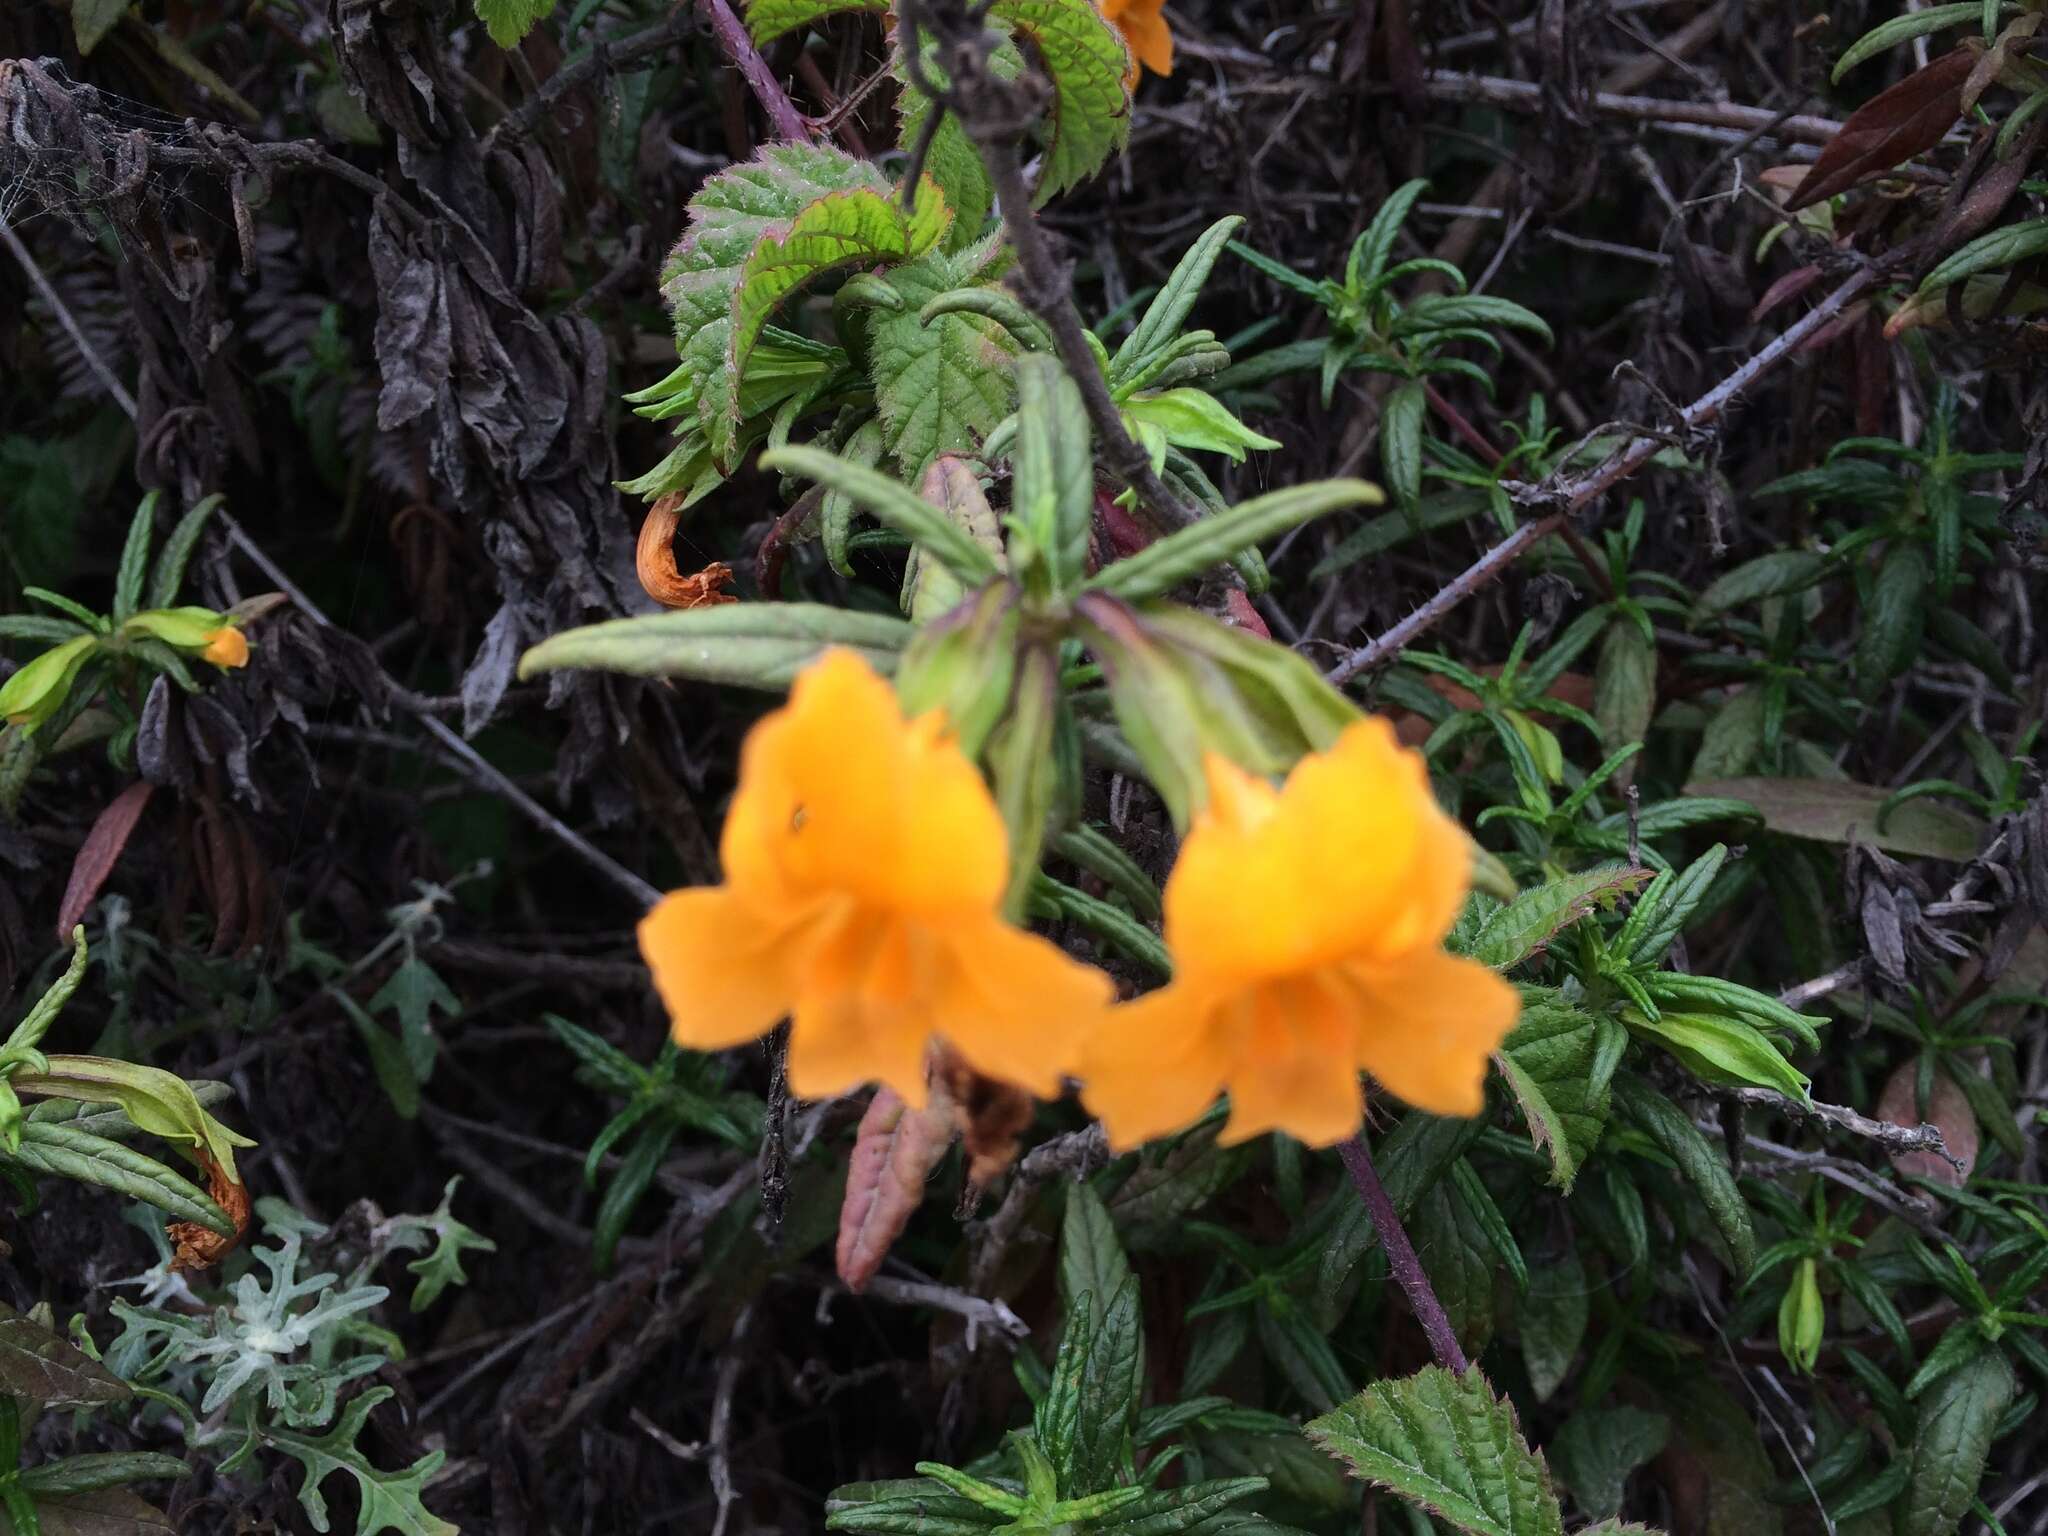 Image of Orange Bush-Monkey-Flower